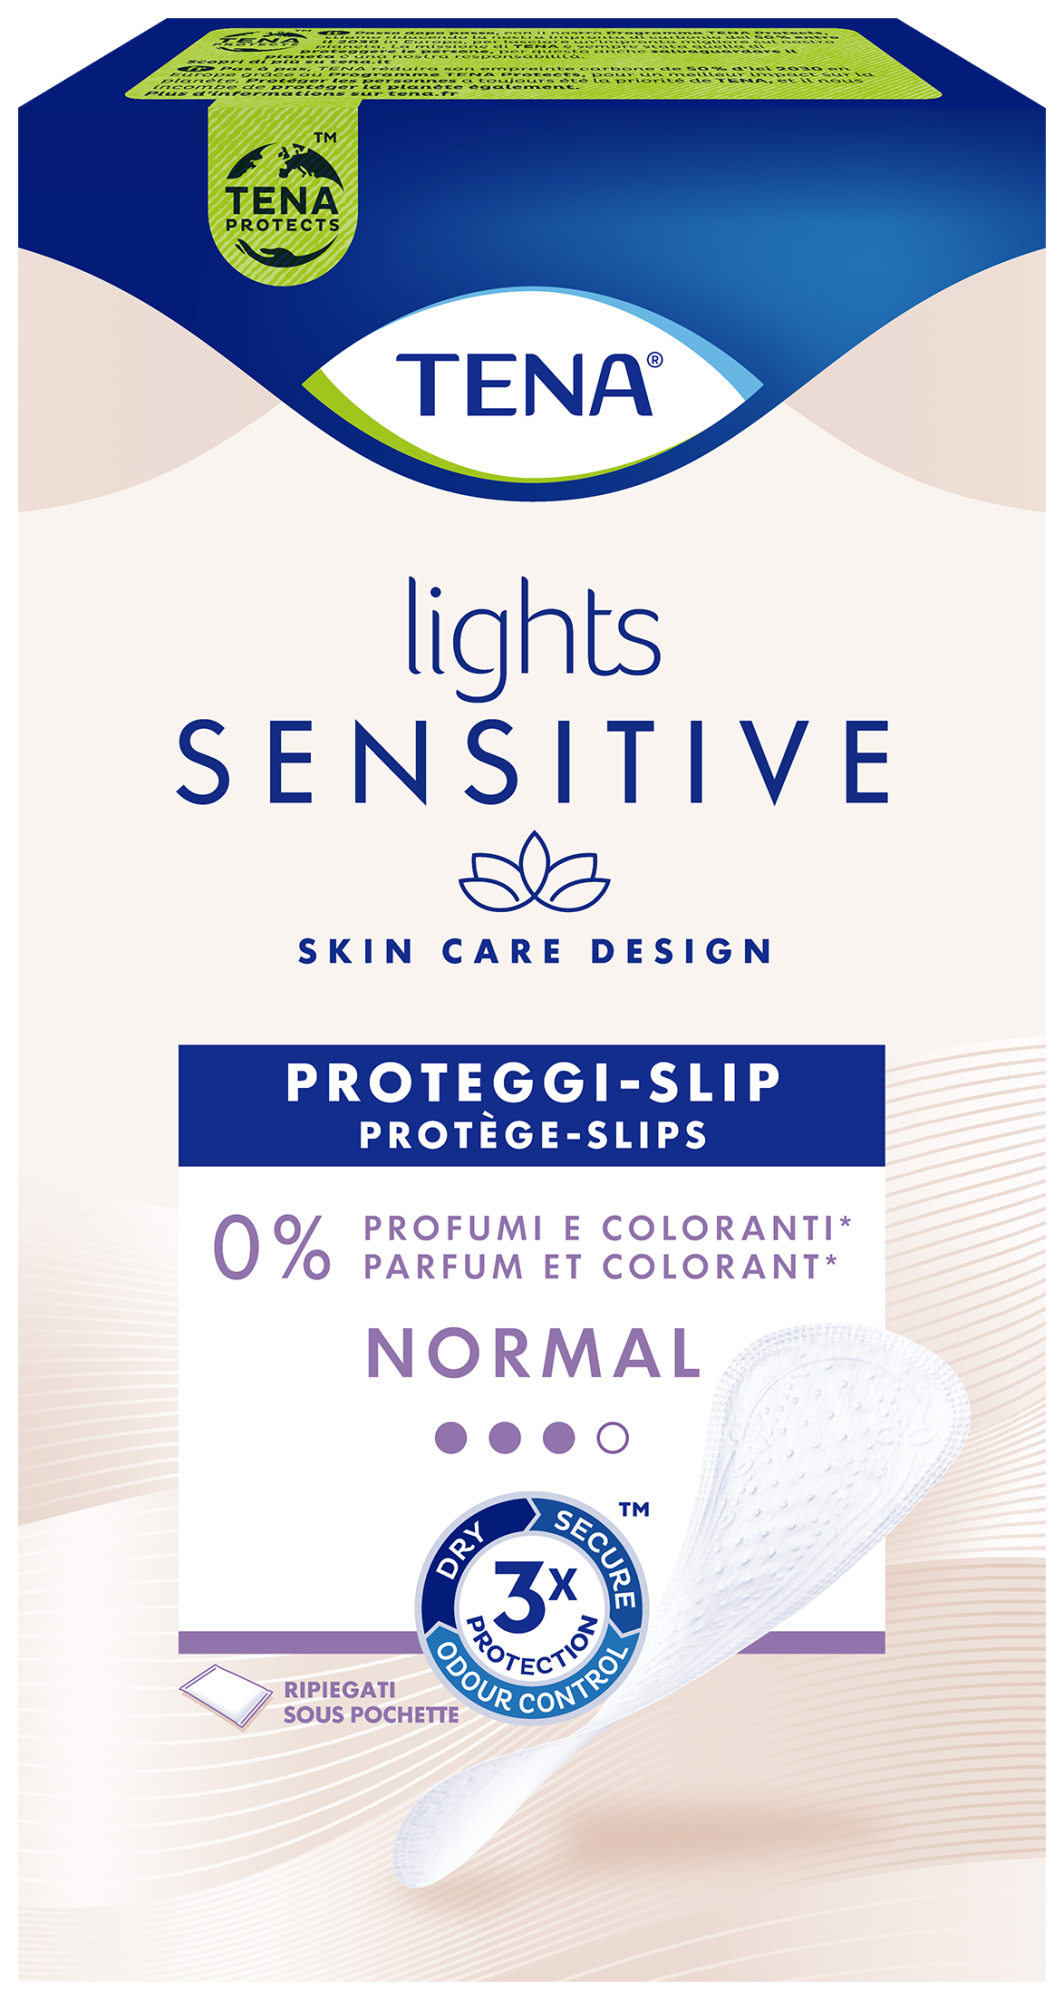 TENA Lights Sensitive Normal | Proteggi-slip Ripiegati per perdite urinarie